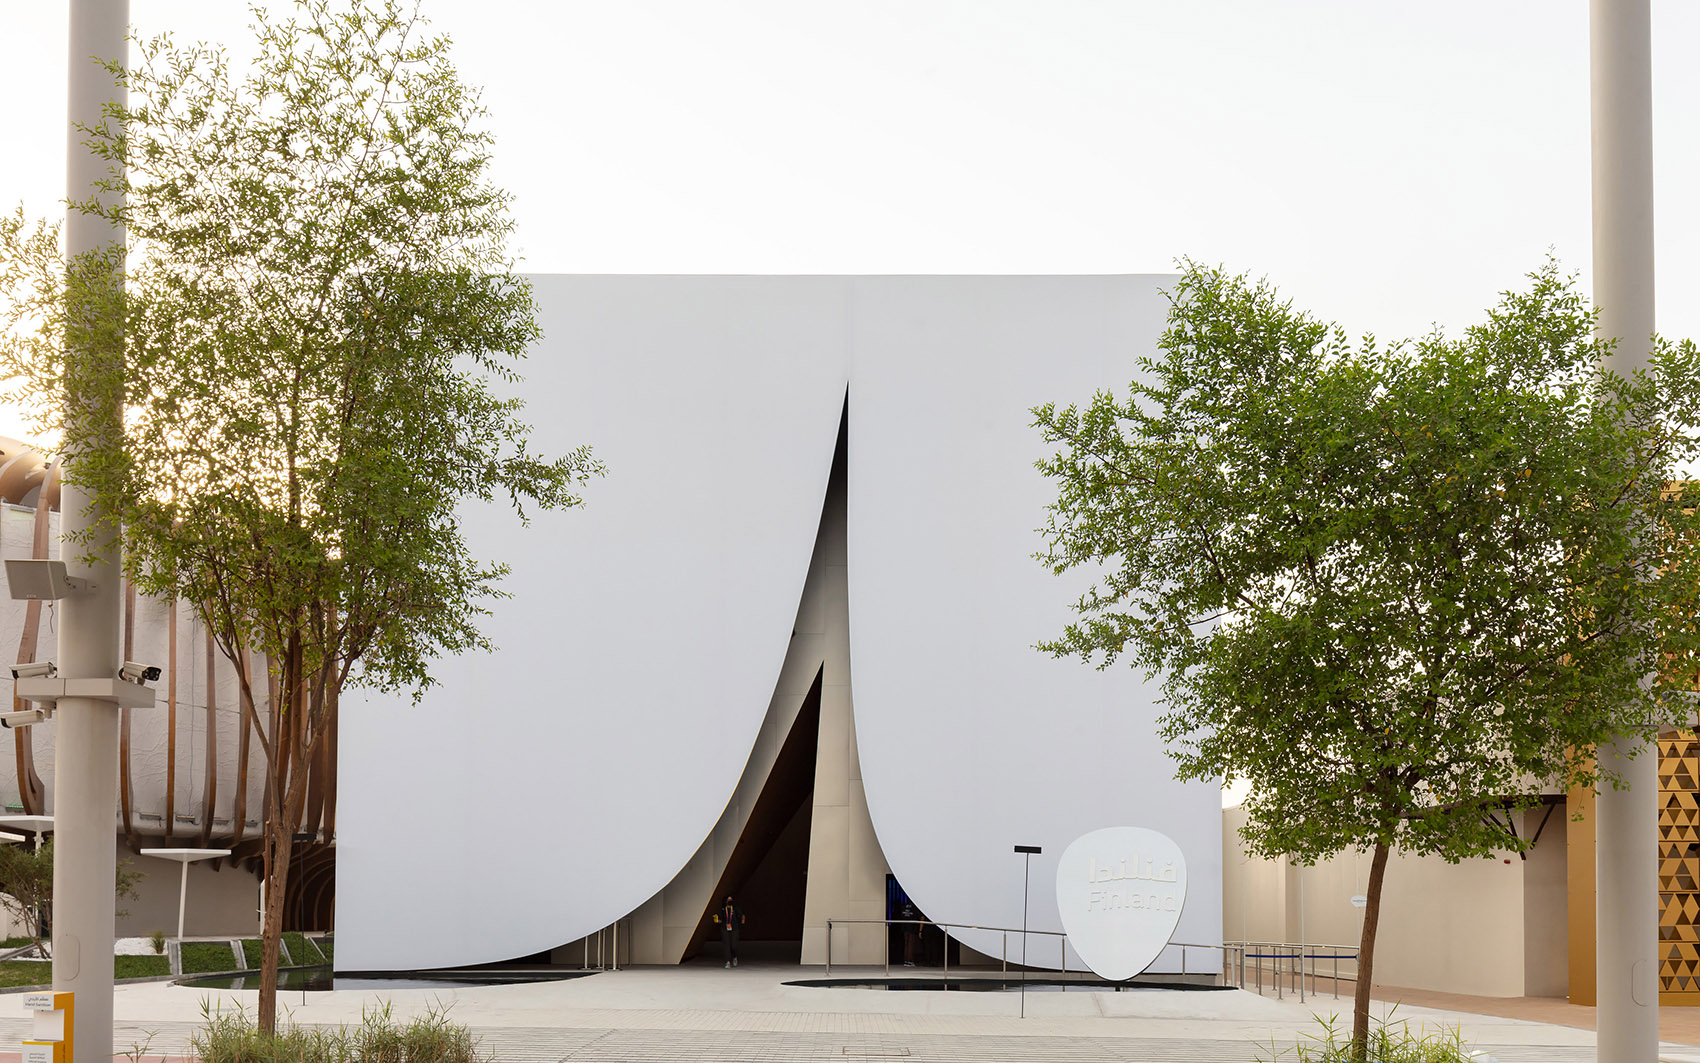 2020迪拜世博会芬兰馆/覆盖在沙漠上的白色积雪-3